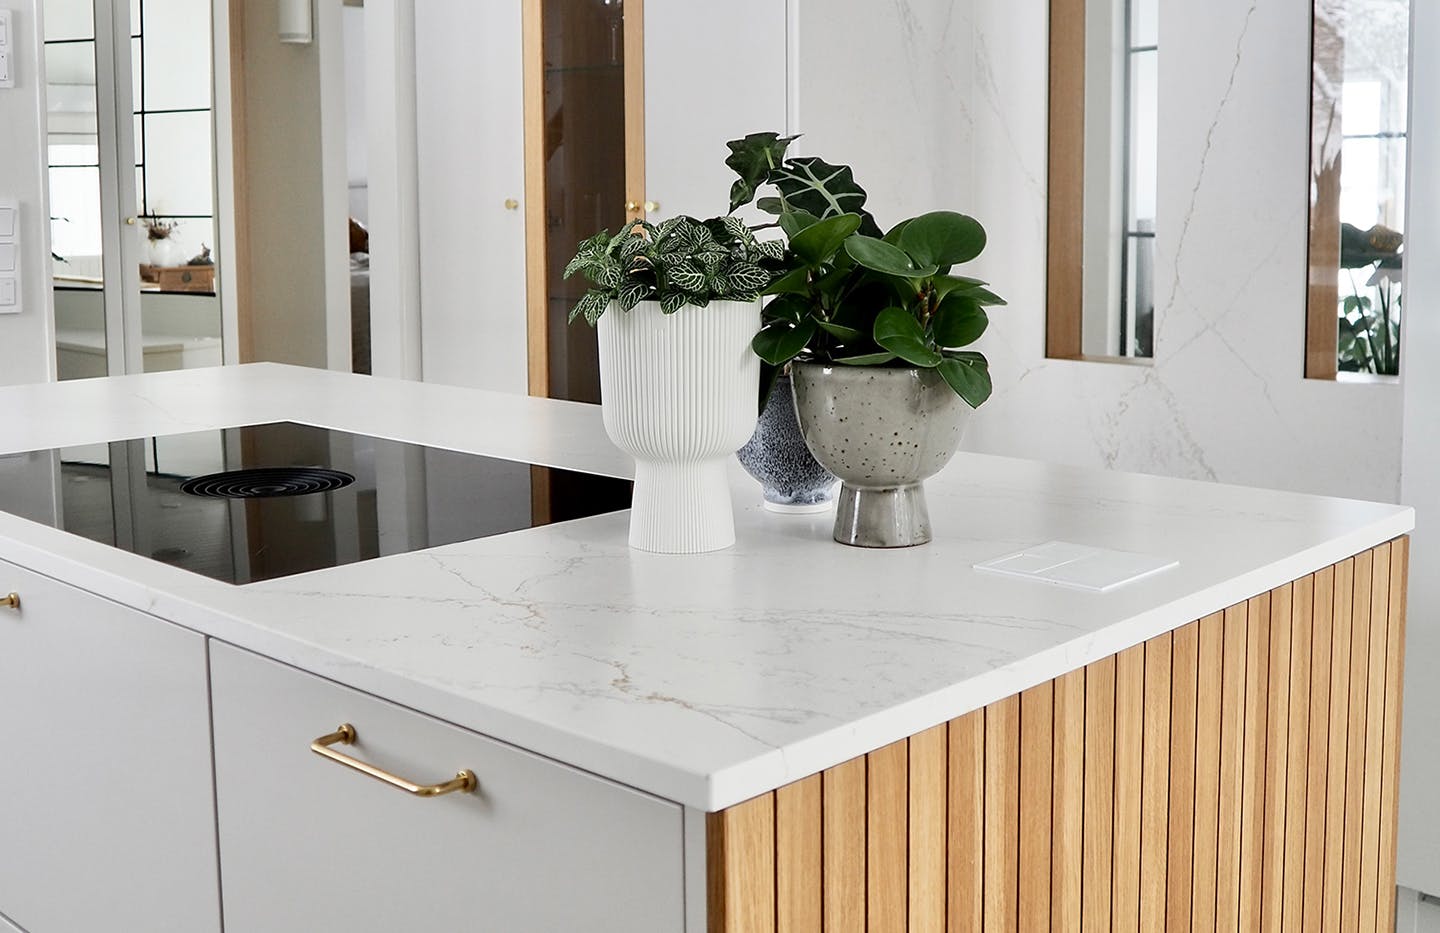 Numero immagine 37 della sezione corrente di Interior designer Katja Suominen chose DKTN Rem countertops for her new kitchen di Cosentino Italia